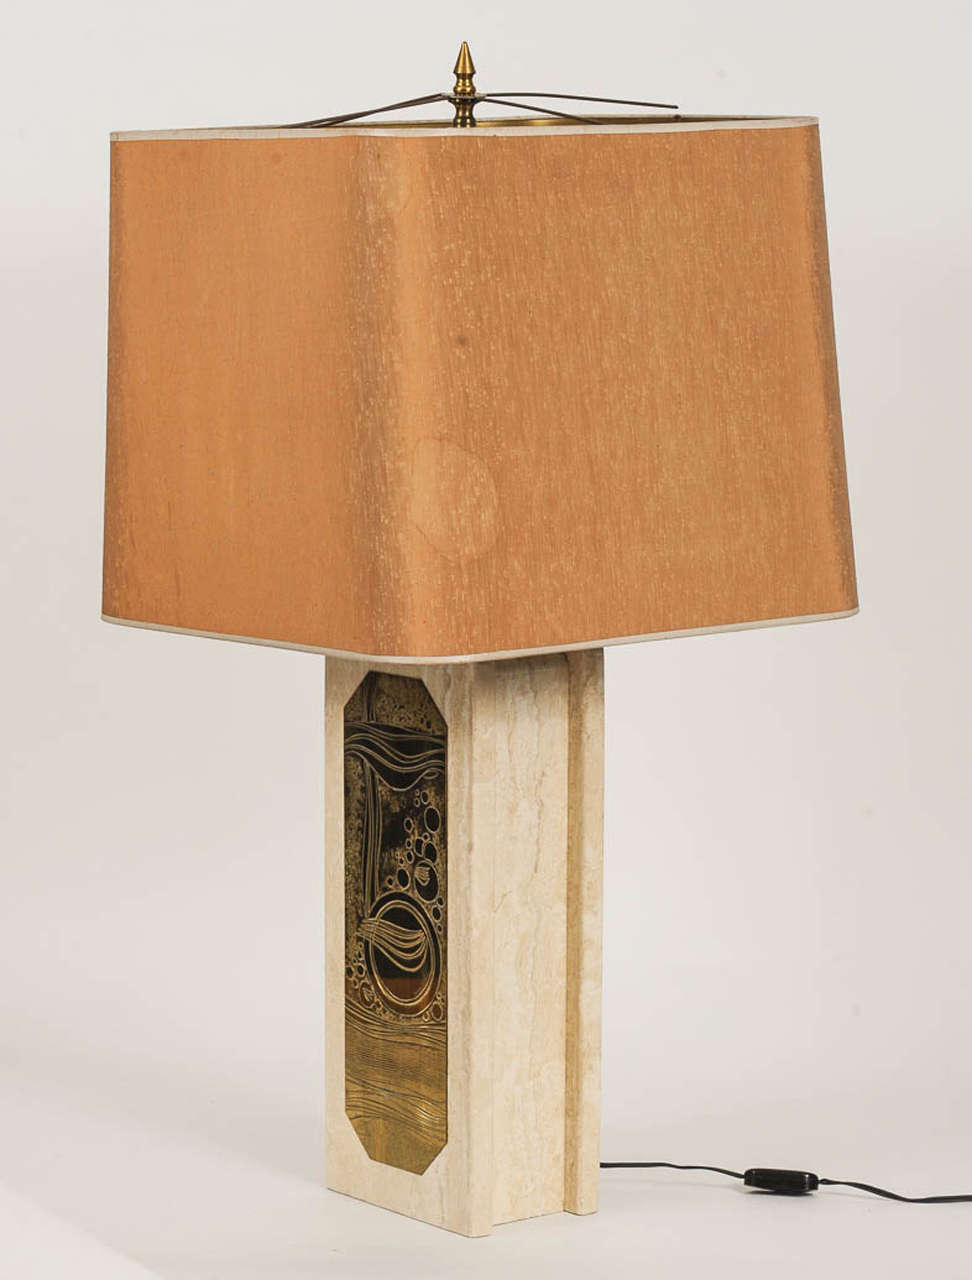 Lampe de table beige marbrée de l'artiste belge Georges Mathias avec plaque en laiton gravé.
Signé Georges Mathias.